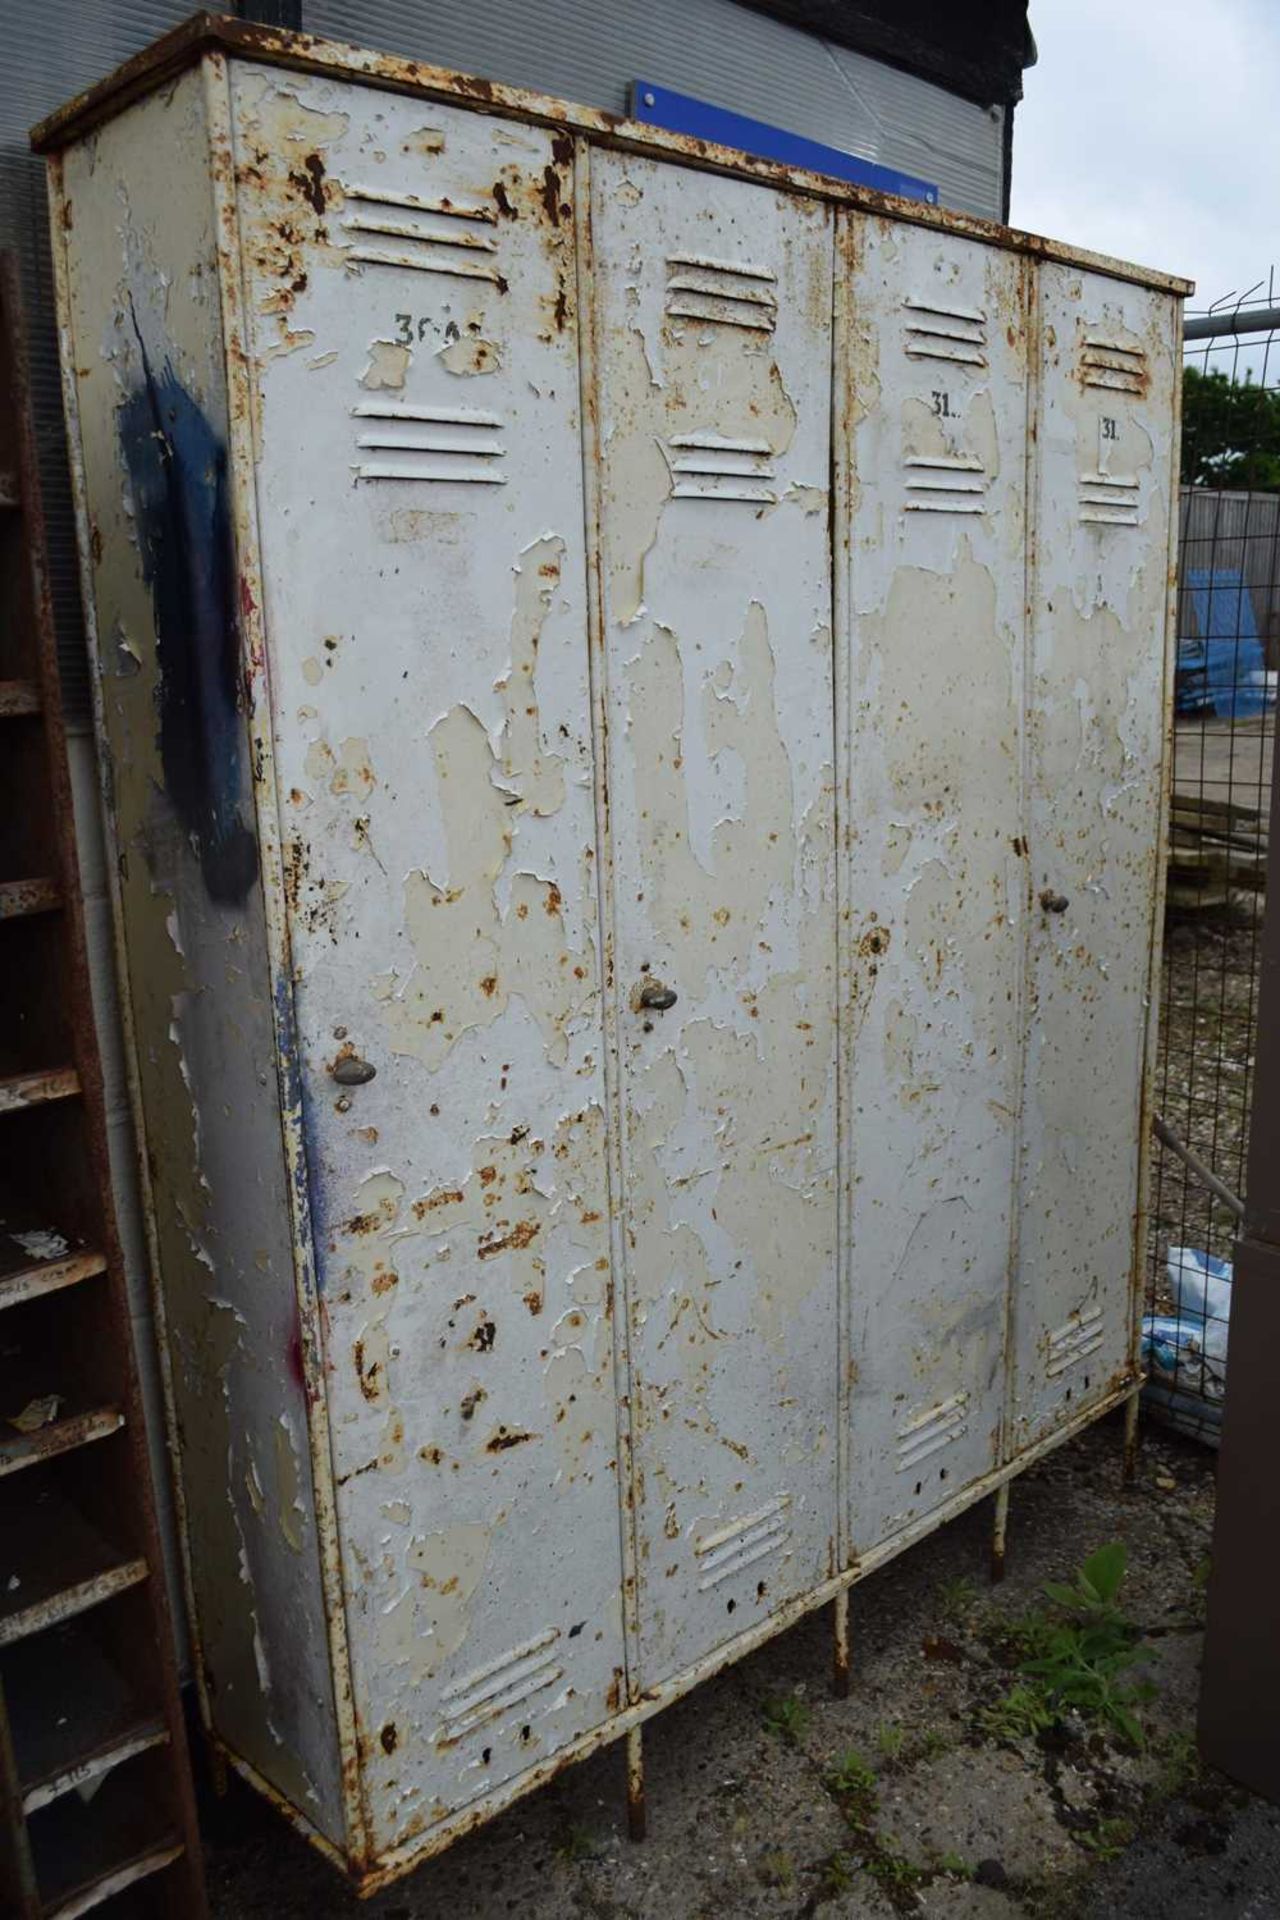 Set of vintage metal lockers, width 150cm, height 190cm